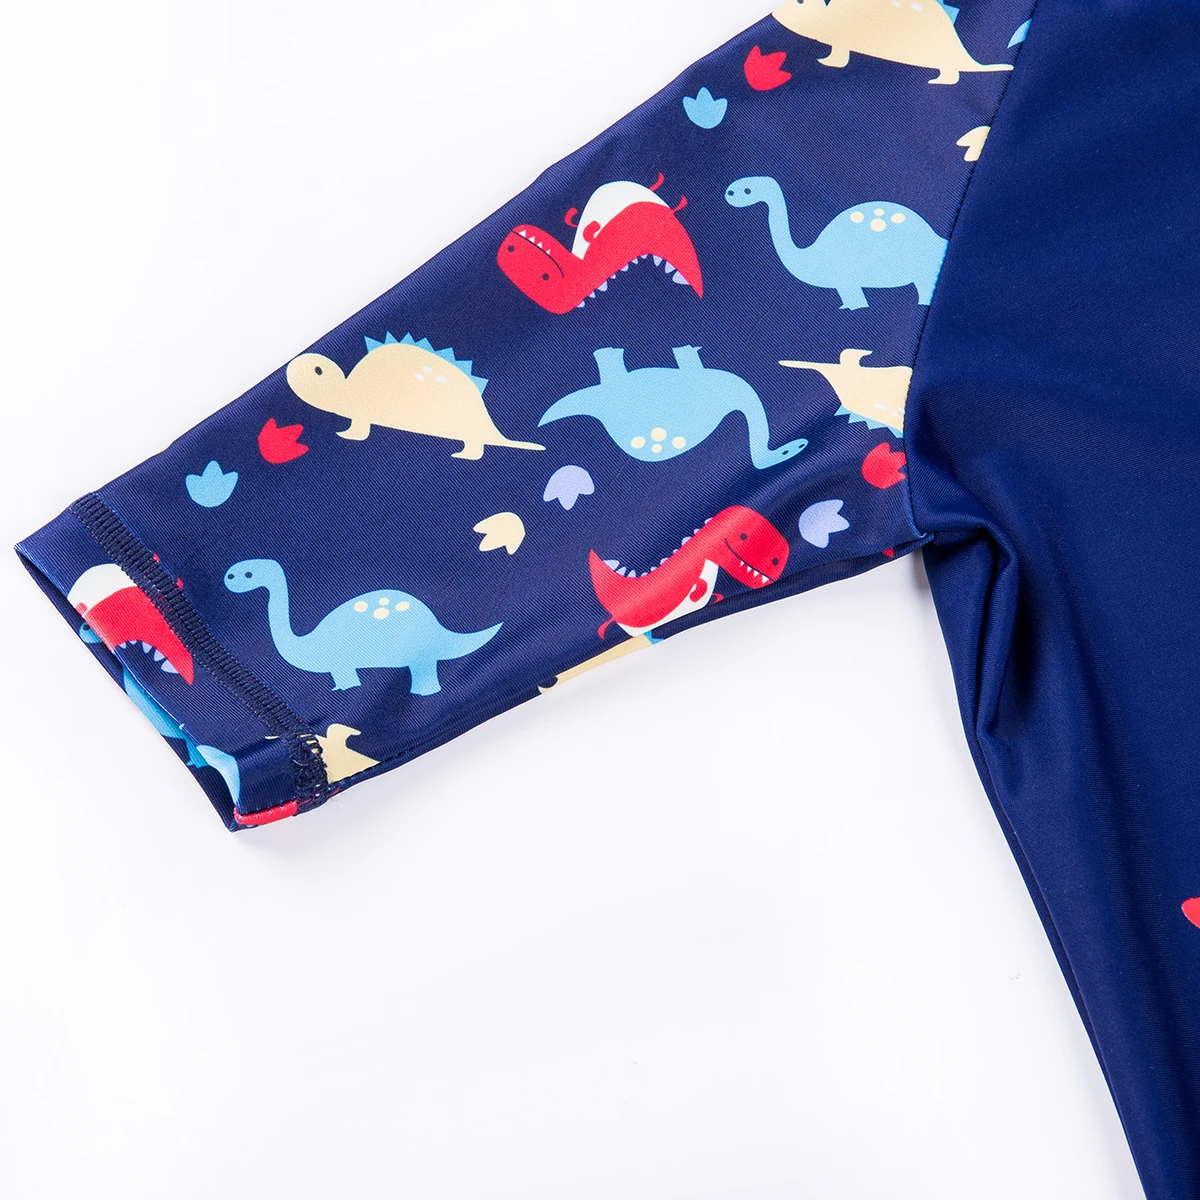 Летний купальный костюм для маленьких мальчиков, Солнцезащитный купальный костюм с принтом динозавра купальный костюм+ шапочка, танкини на молнии, комплекты От 1 до 6 лет